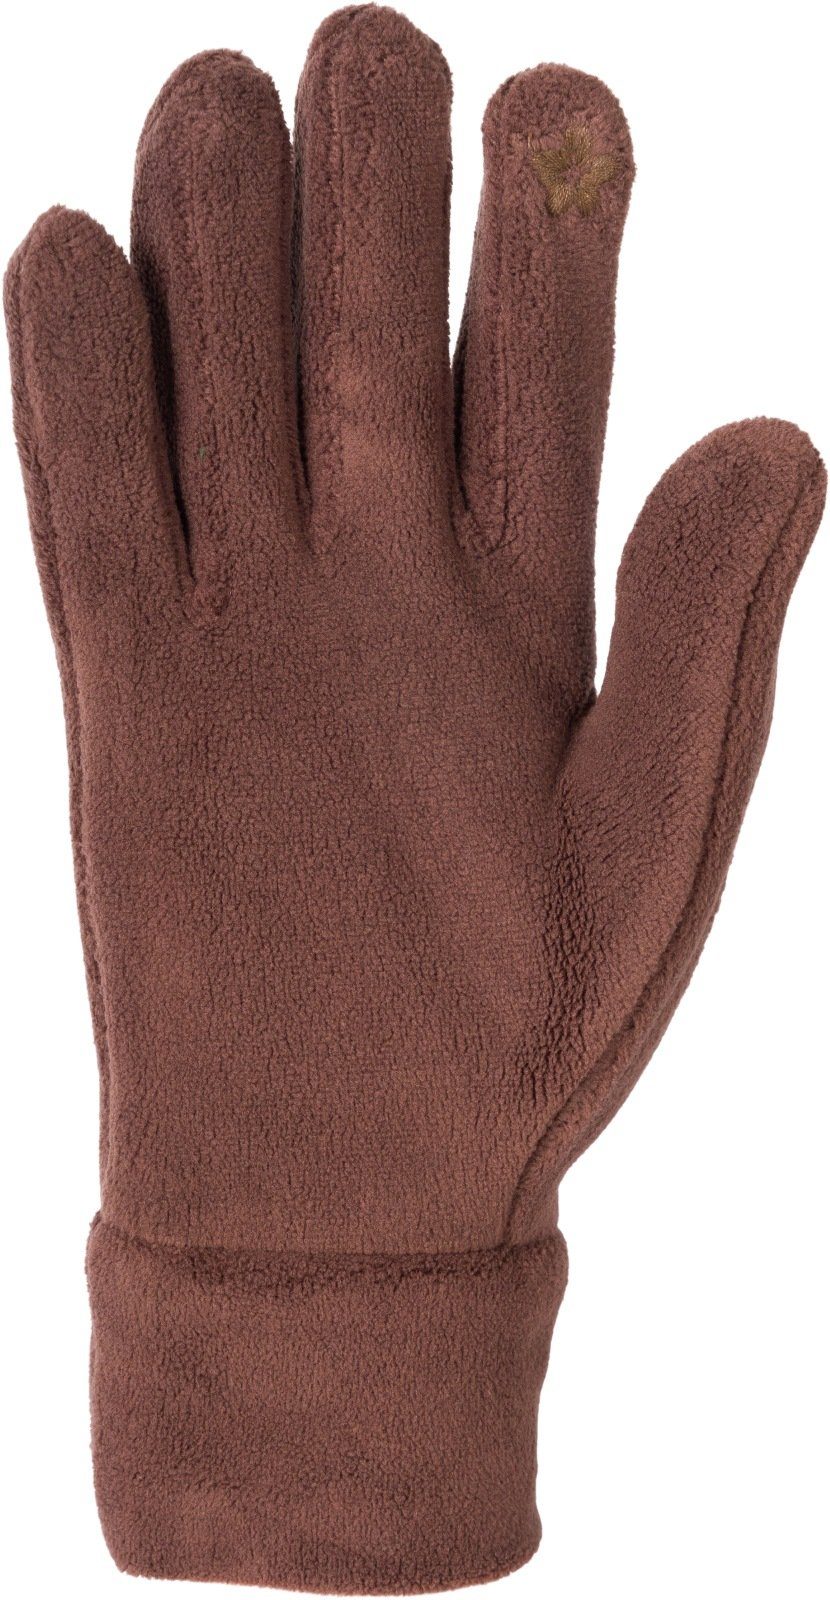 styleBREAKER Fleecehandschuhe Einfarbige Fleece Handschuhe Schokobraun Touchscreen